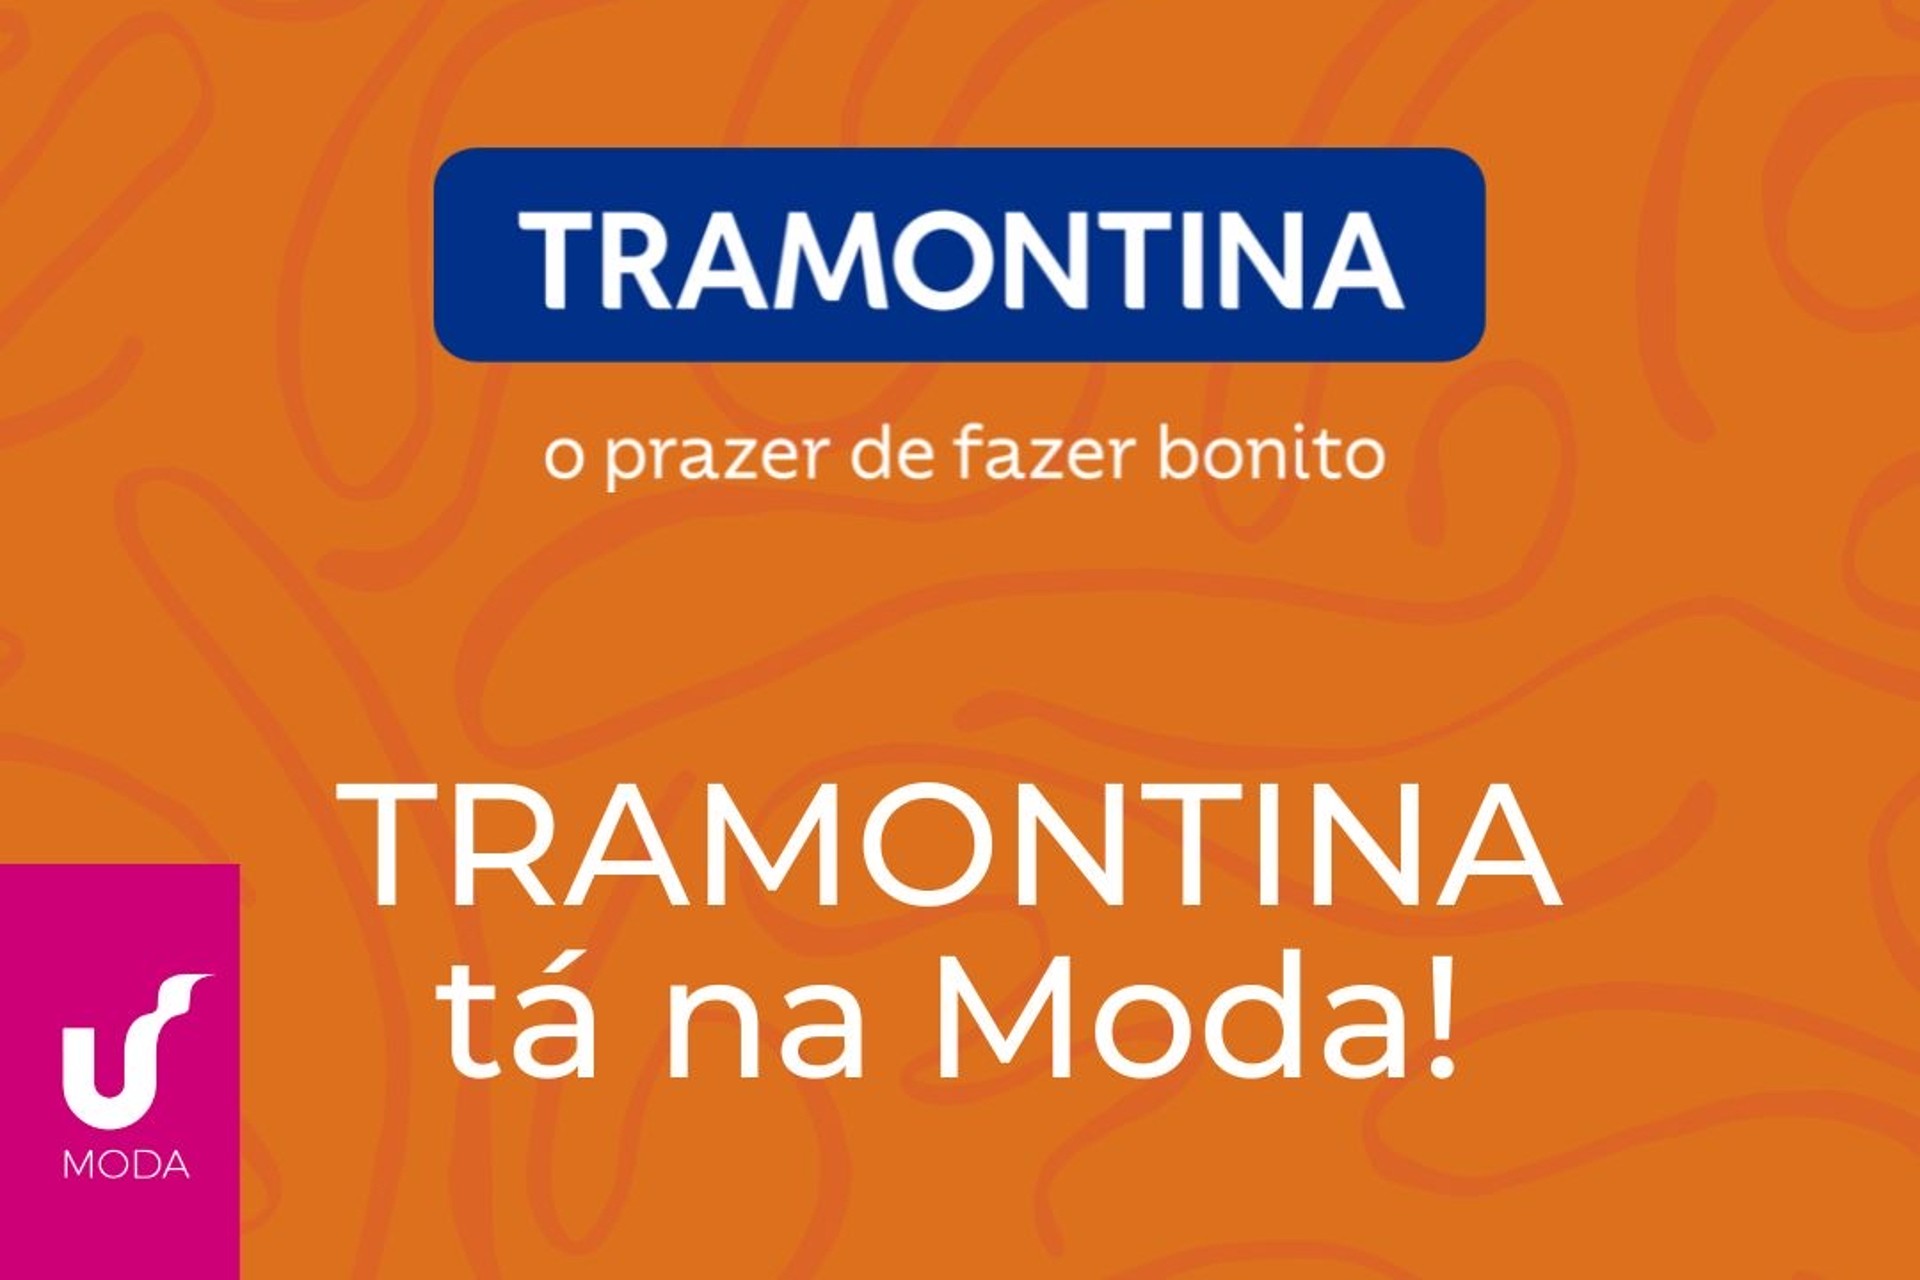 Tramontina é anunciada a marca parceira do Workshop Moda da Unisinos